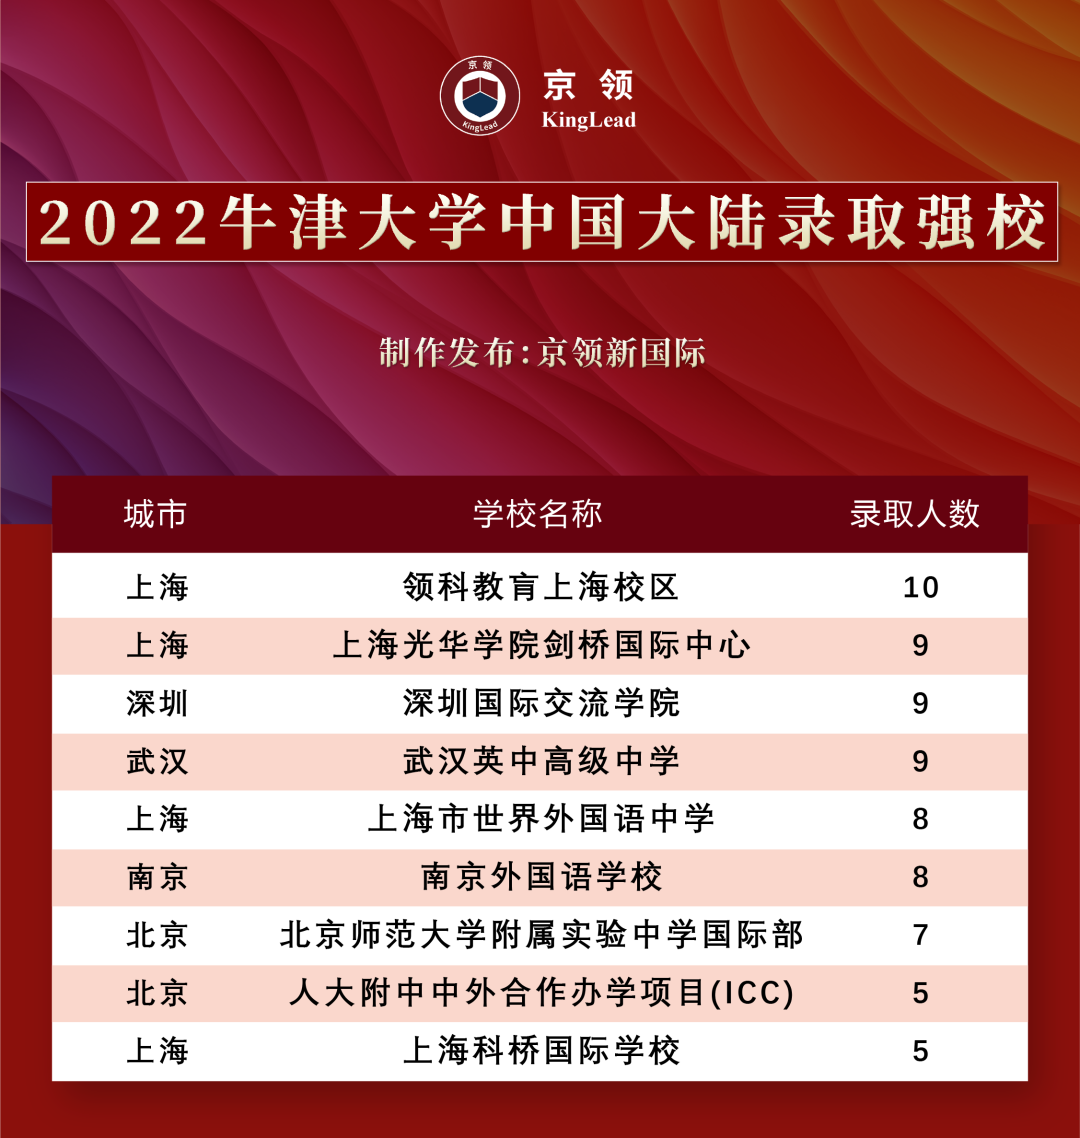 2022级中国学子170枚牛津offer，分别被这些专业所录取  数据 牛津大学 第21张